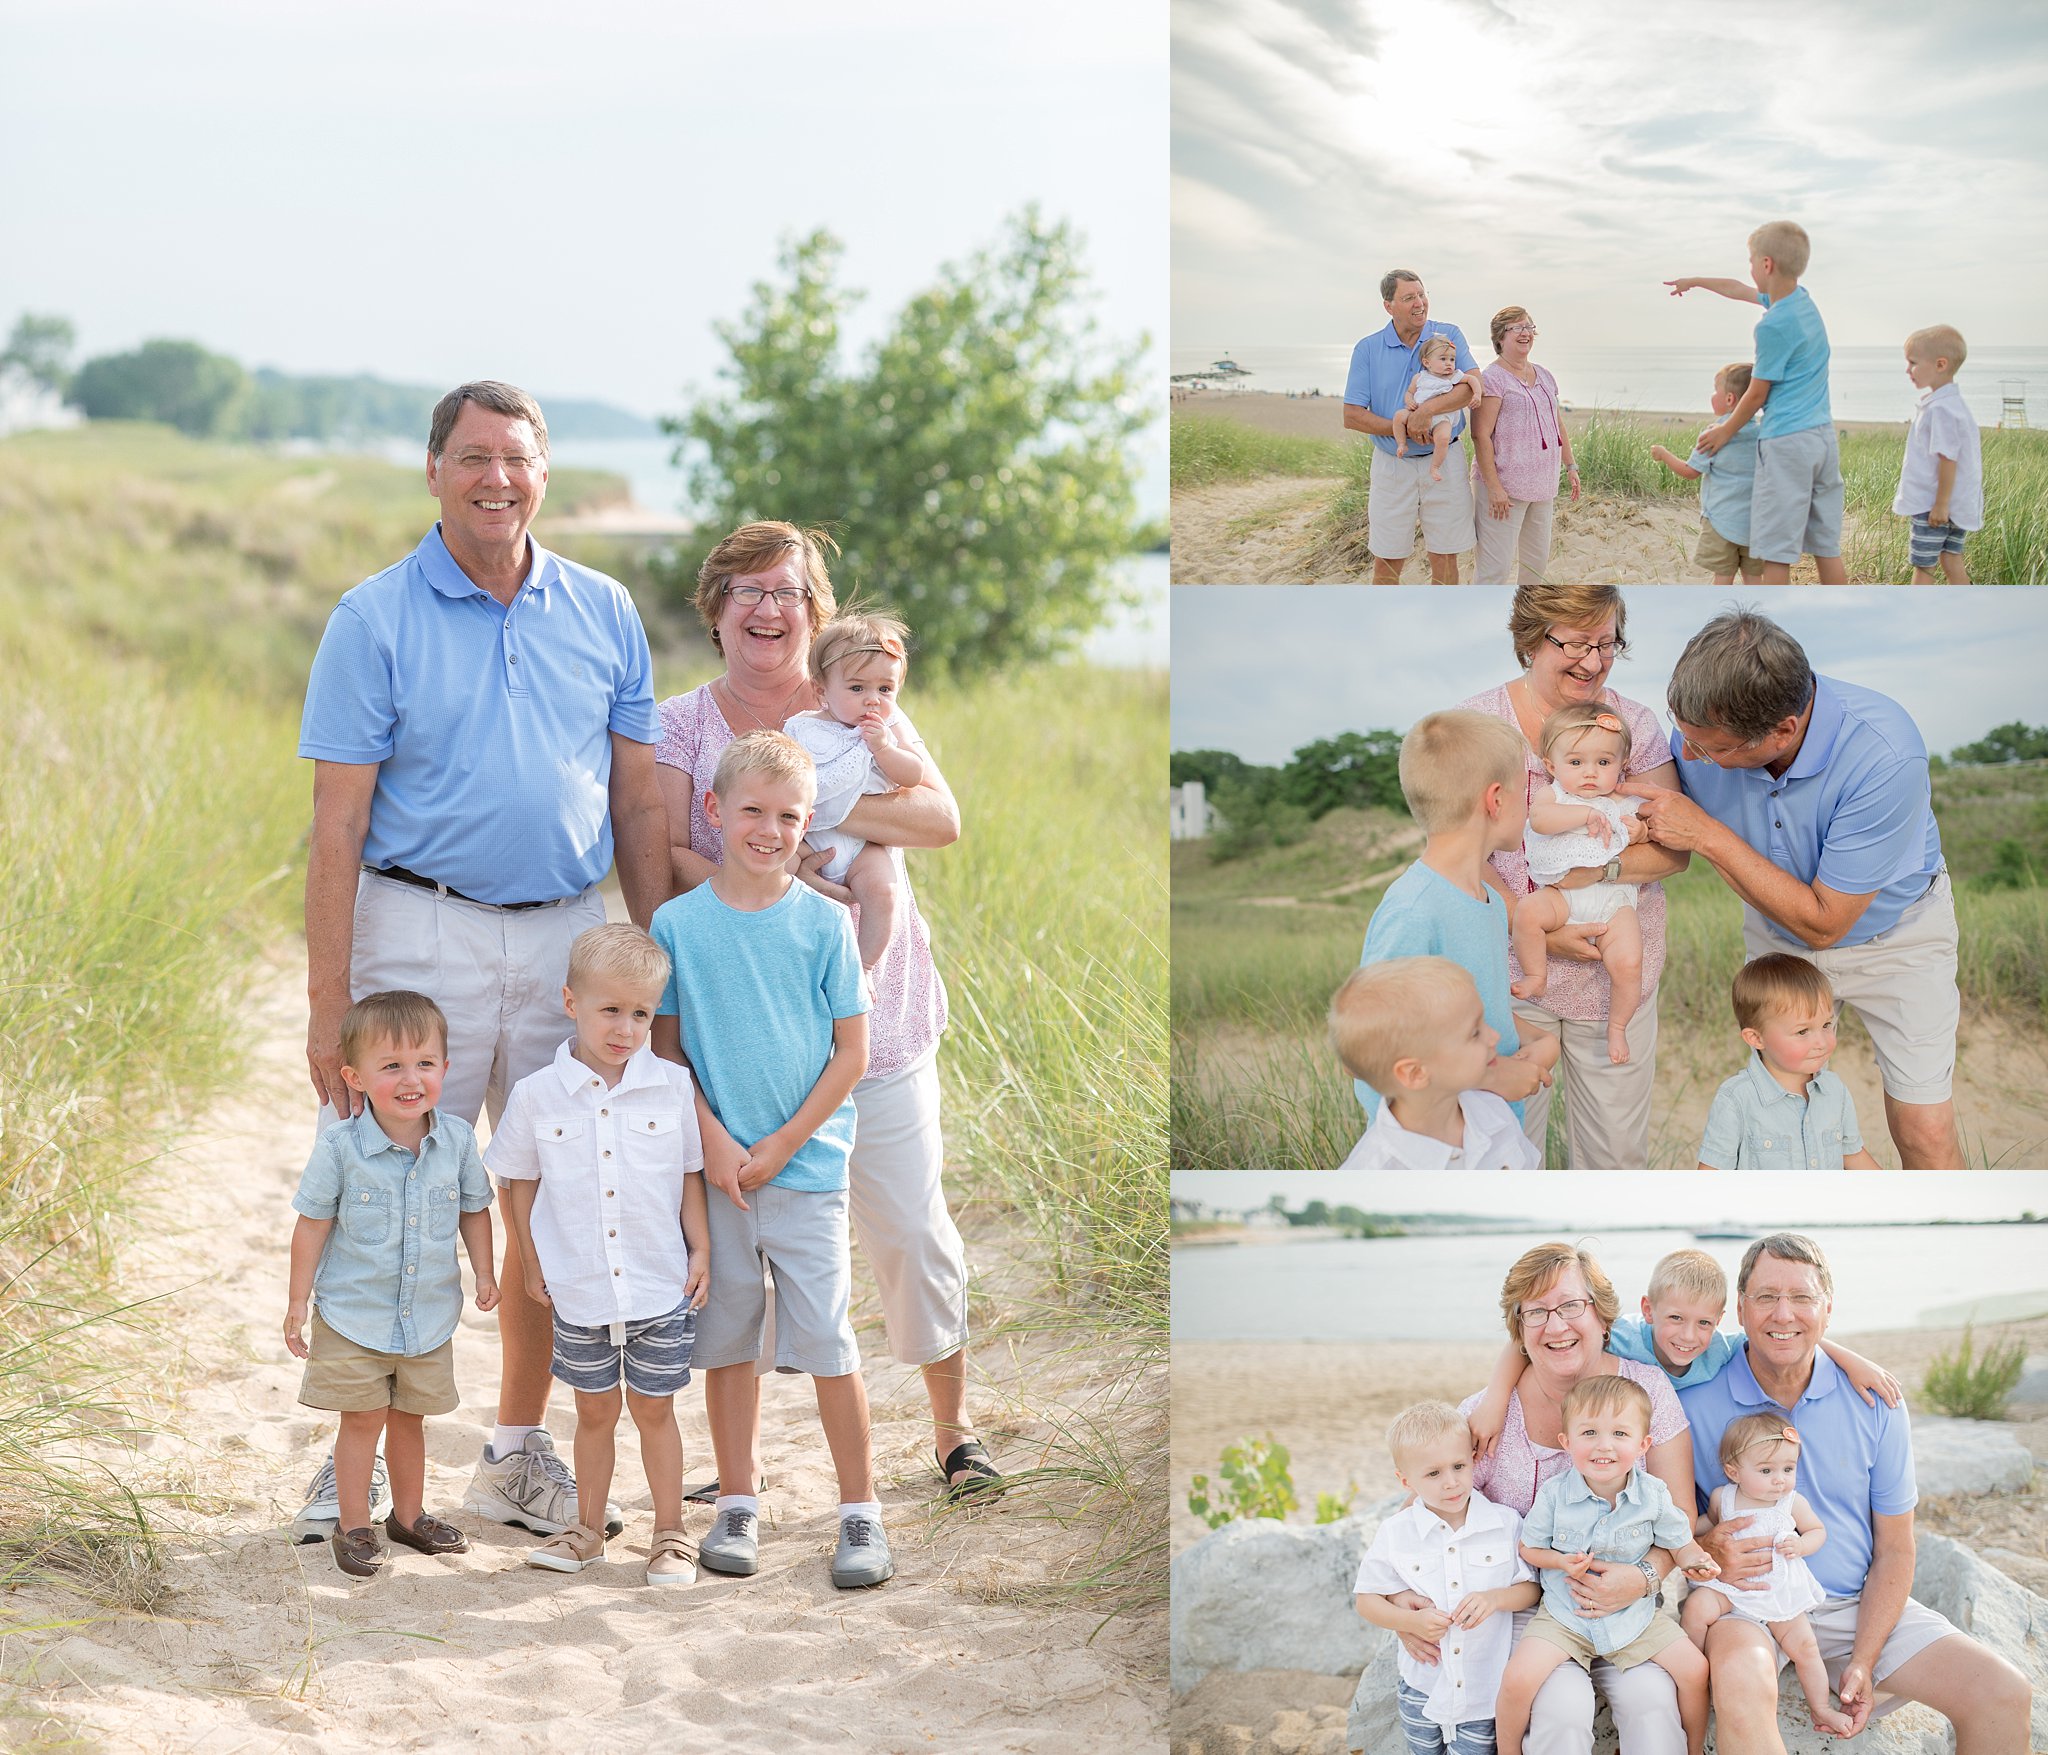 Rahe Family | New Buffalo Michigan | New Buffalo Michgan Family Photographer | Toni Jay Photography